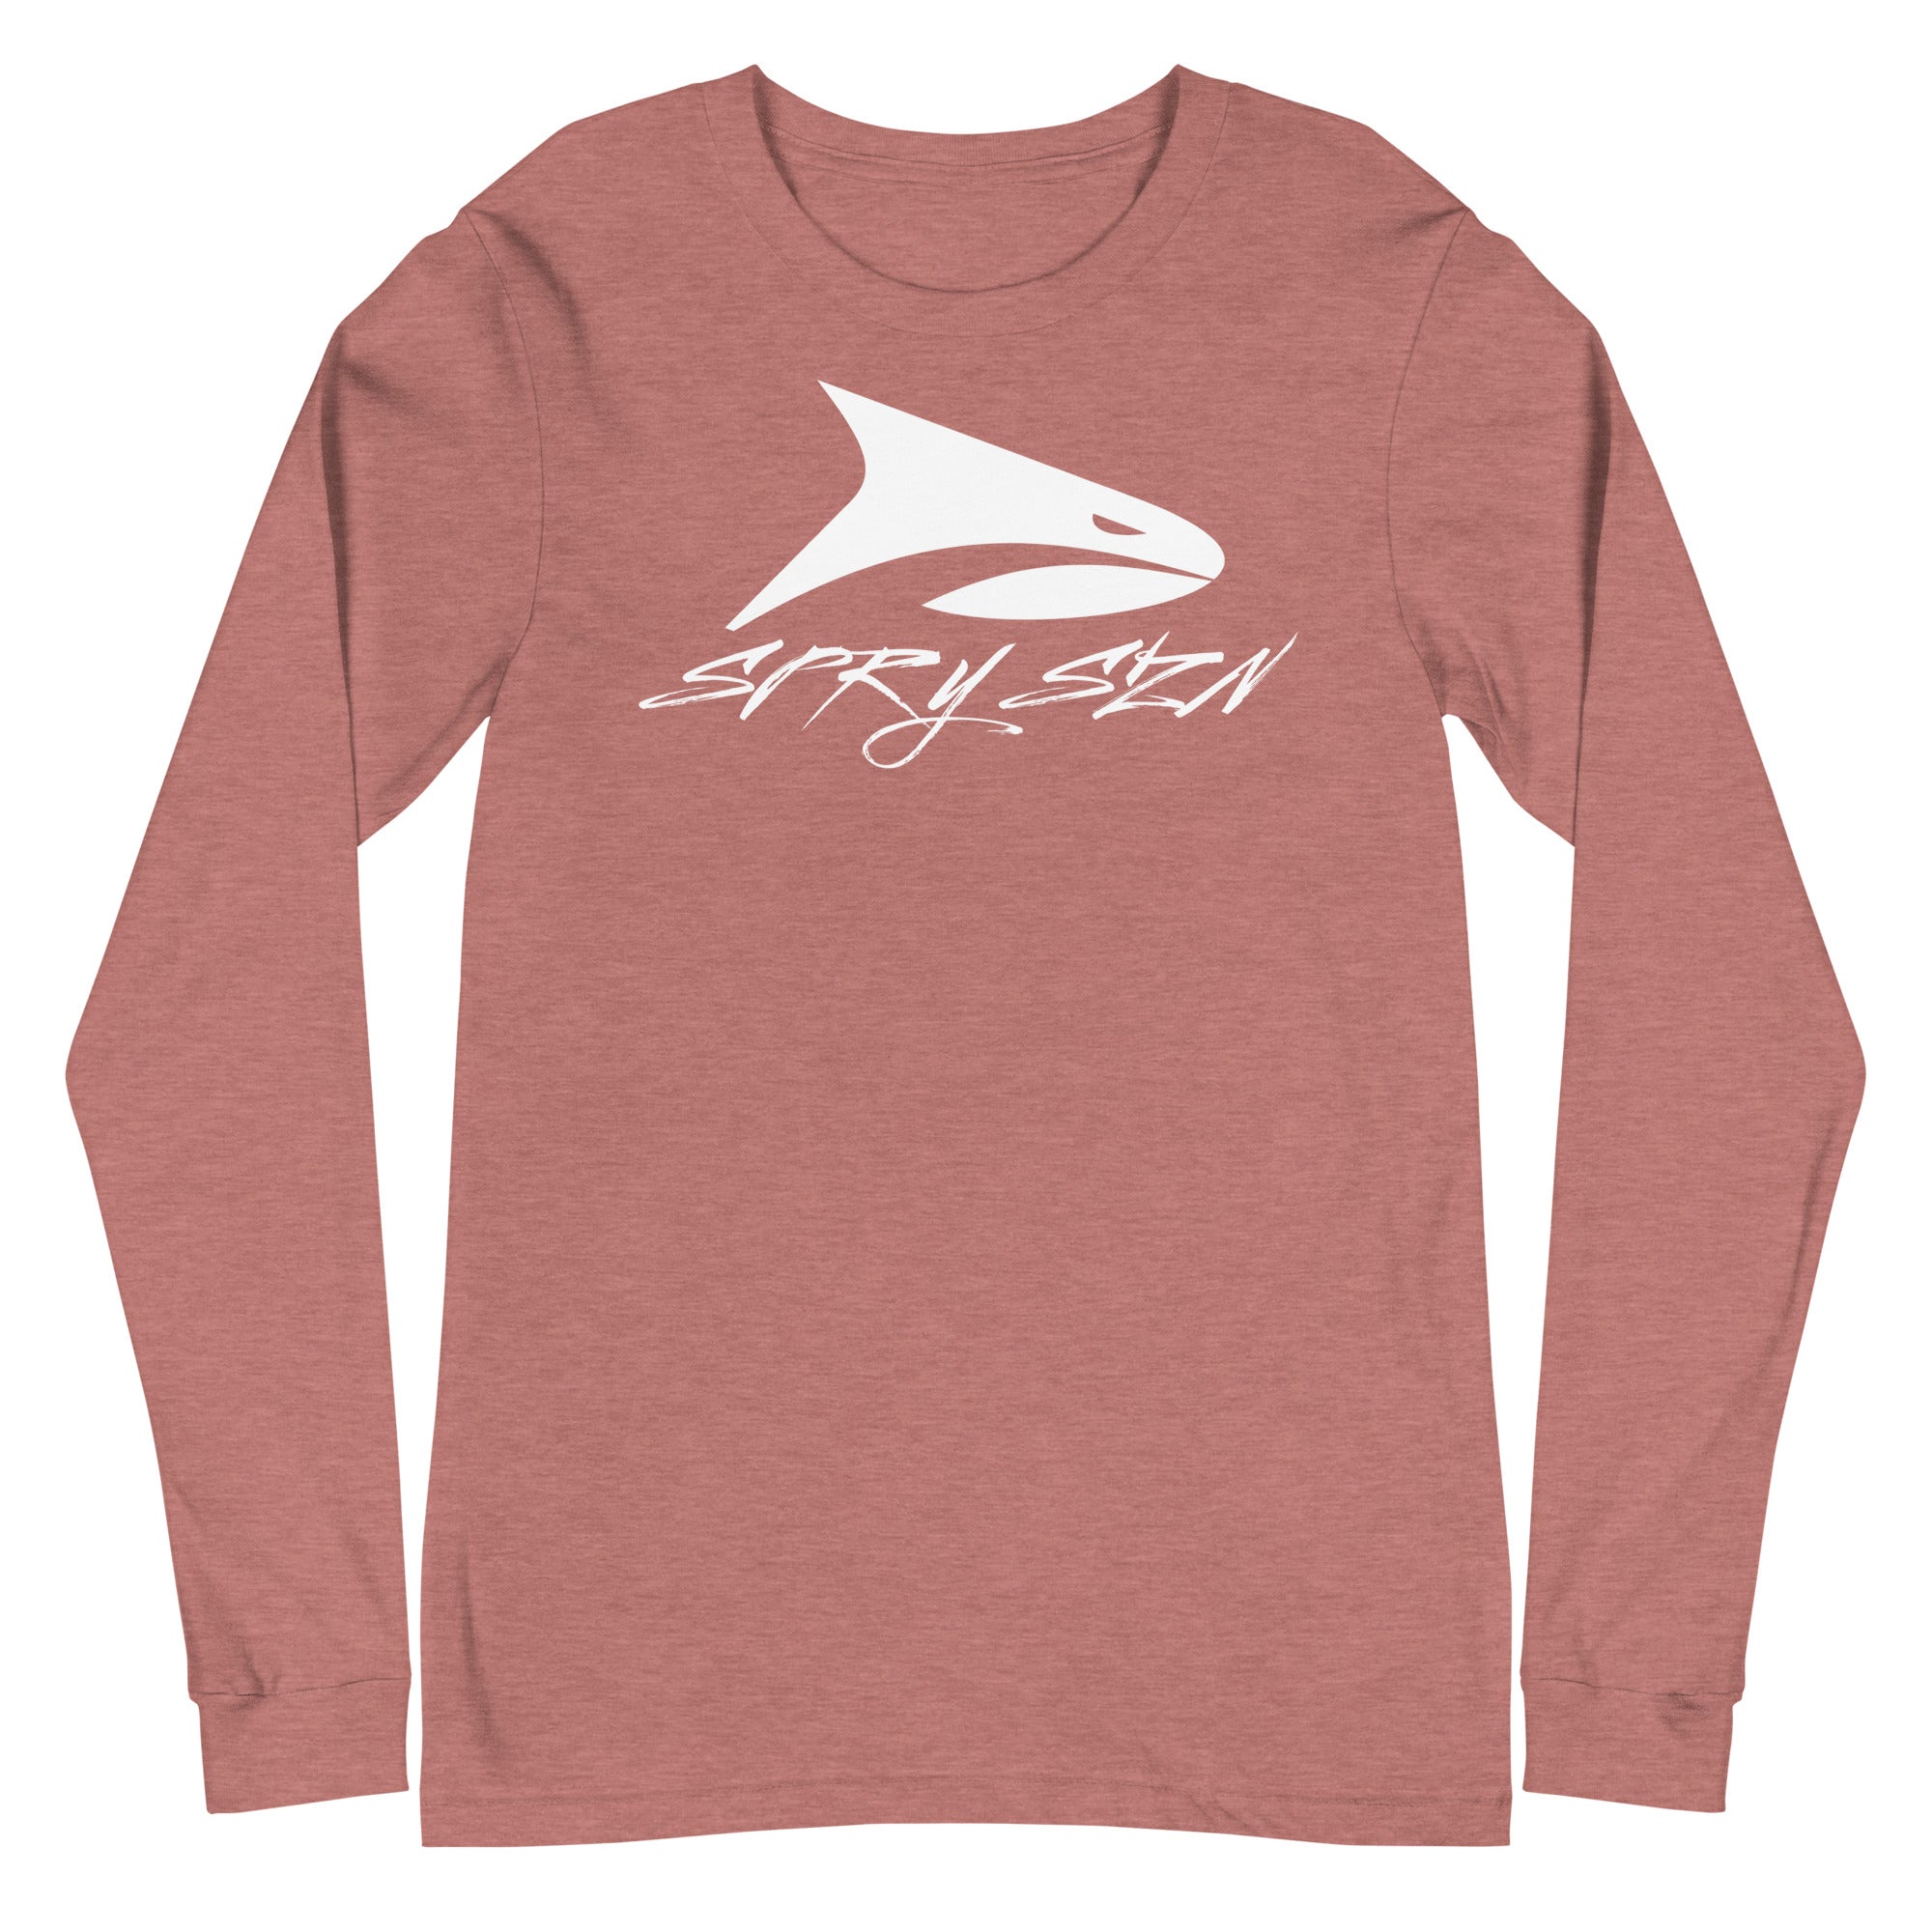 SPRY SZN White Shark Lightweight Long Sleeve Shirt